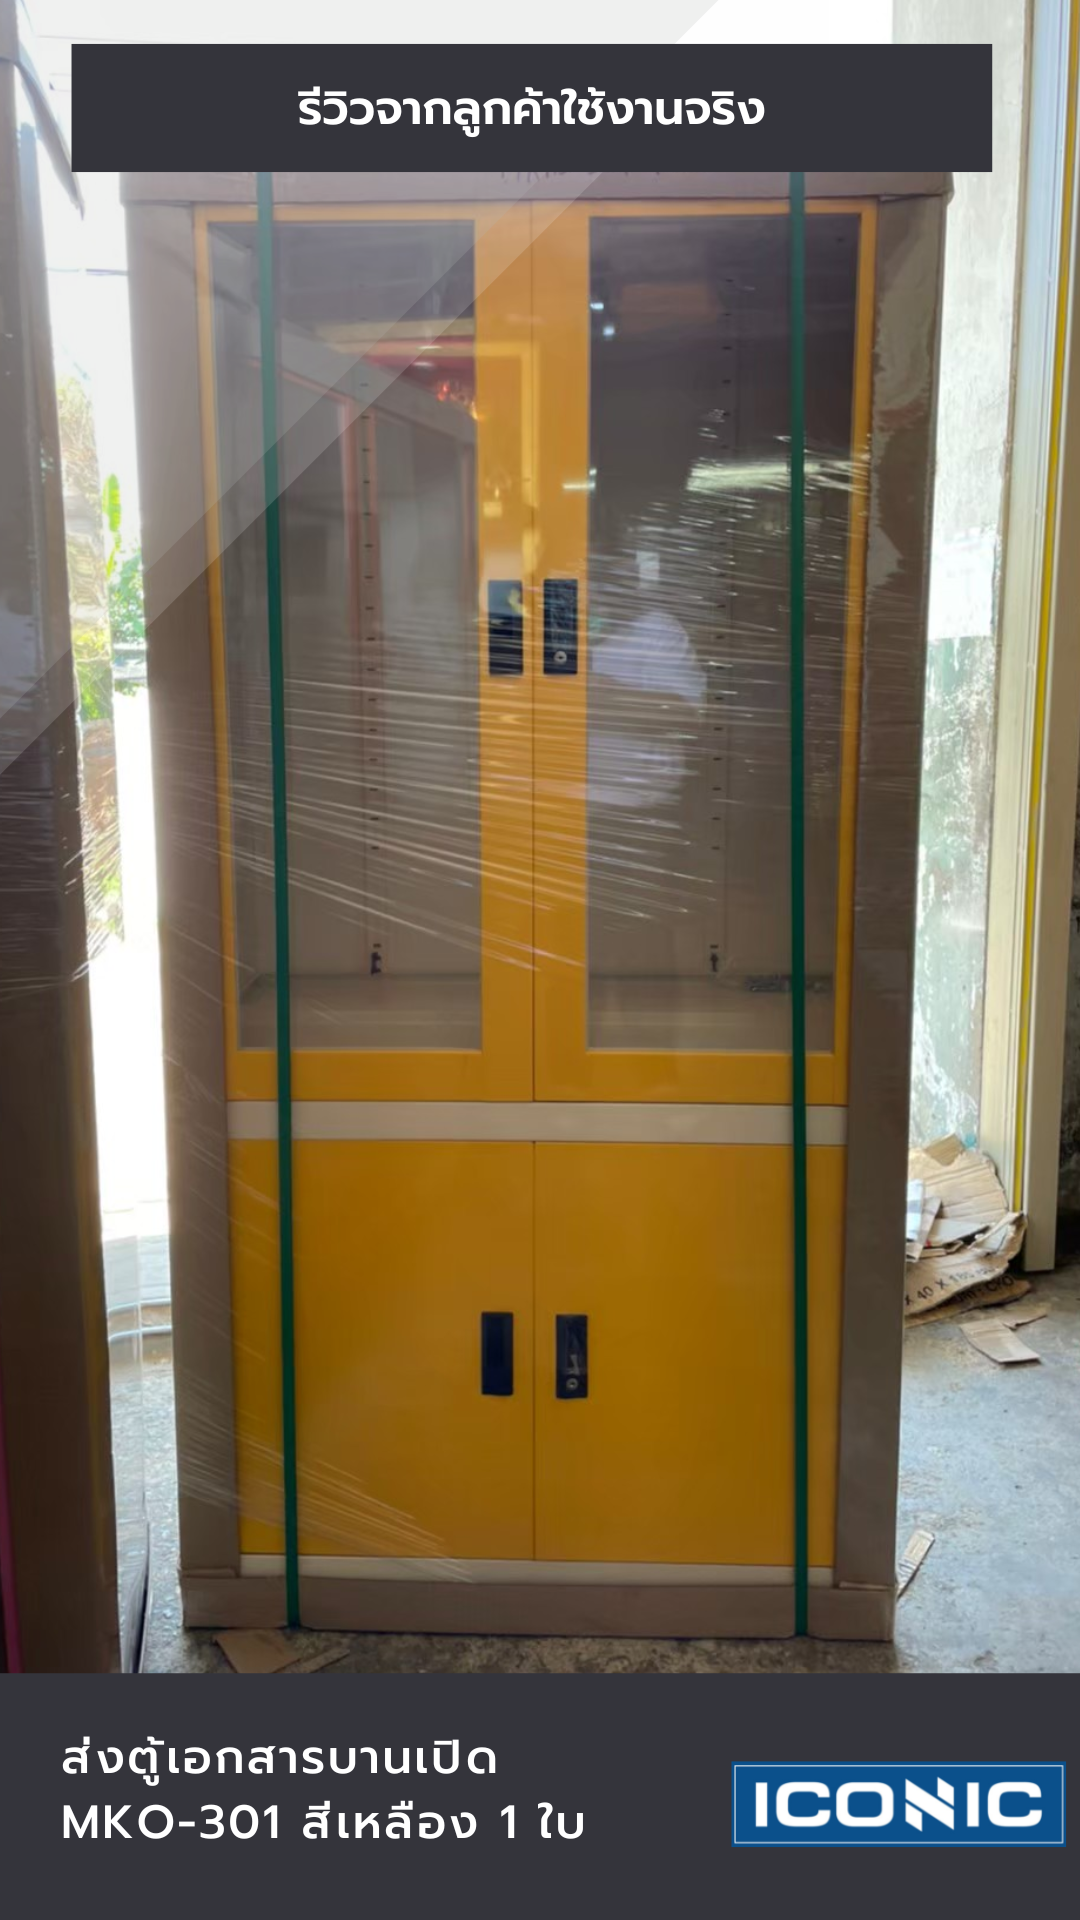 รีวิวตู้เหล็กบานเปิดผสม (บนกระจกสูง-ล่างทึบเตี้ย) รุ่น MKO-301 สีเหลือง 5